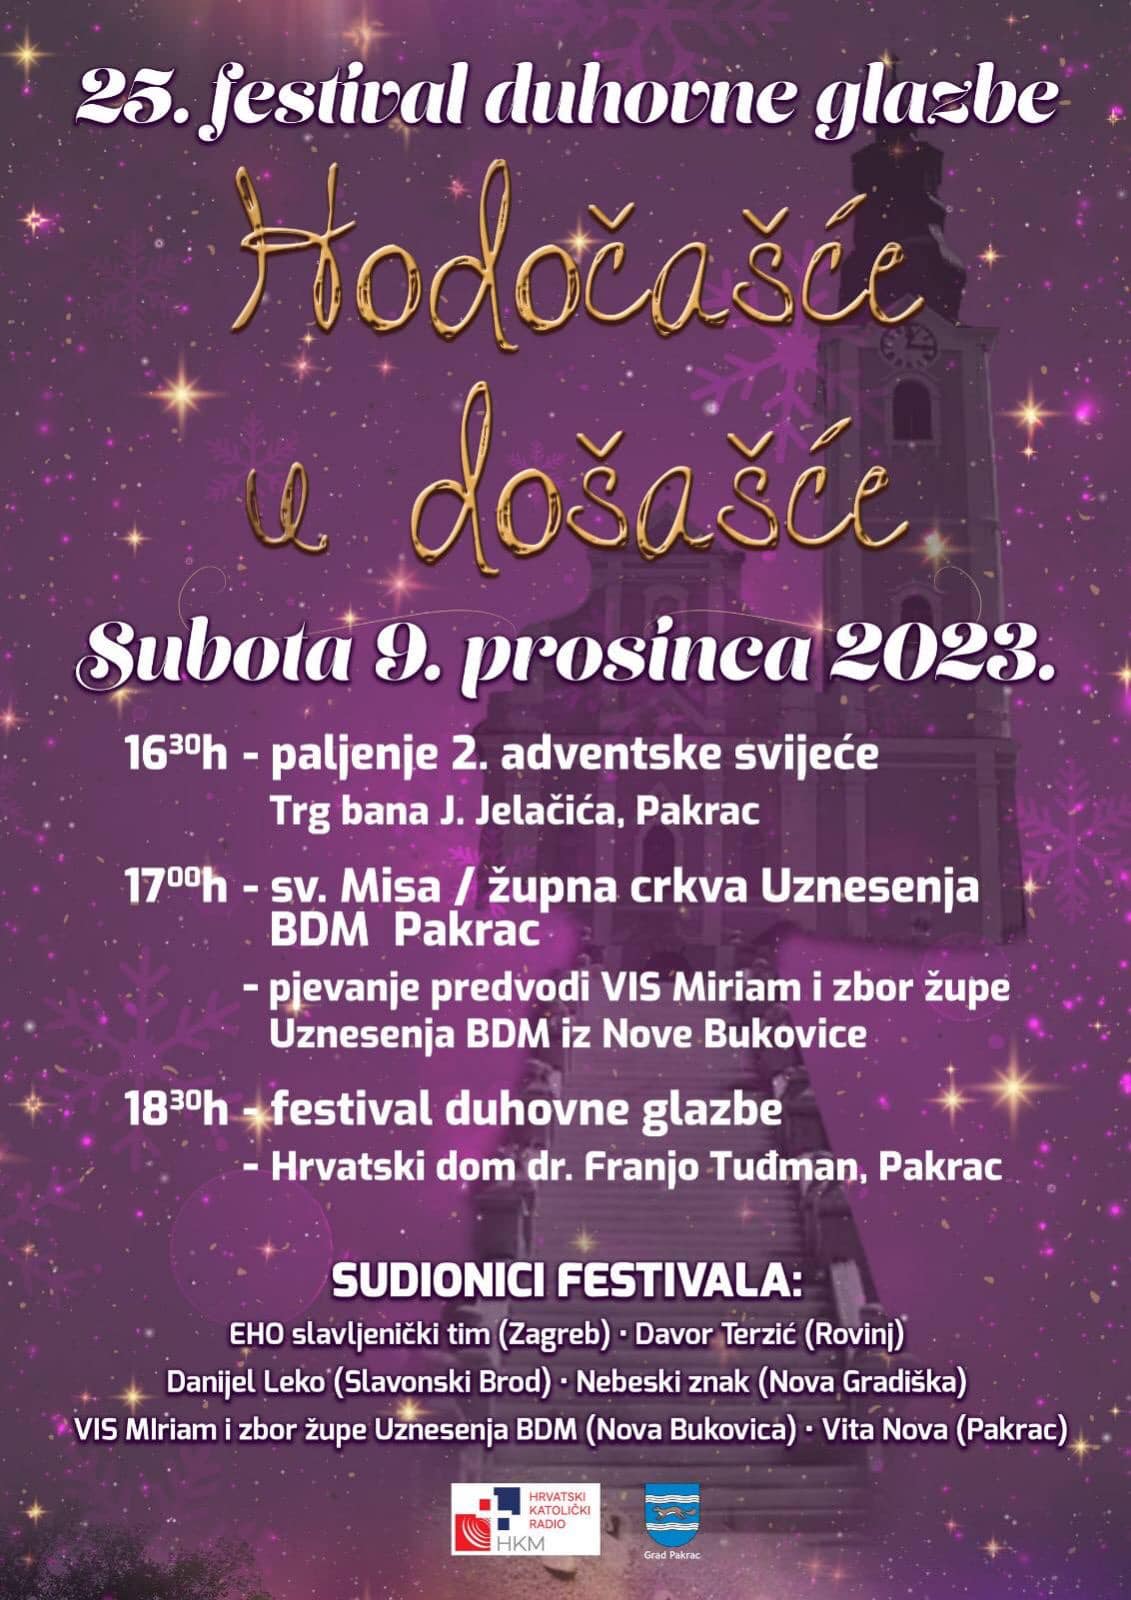 9. PROSINCA U HRVATSKOM DOMU 25. festival duhovne glazbe „Hodočašće u došašće“